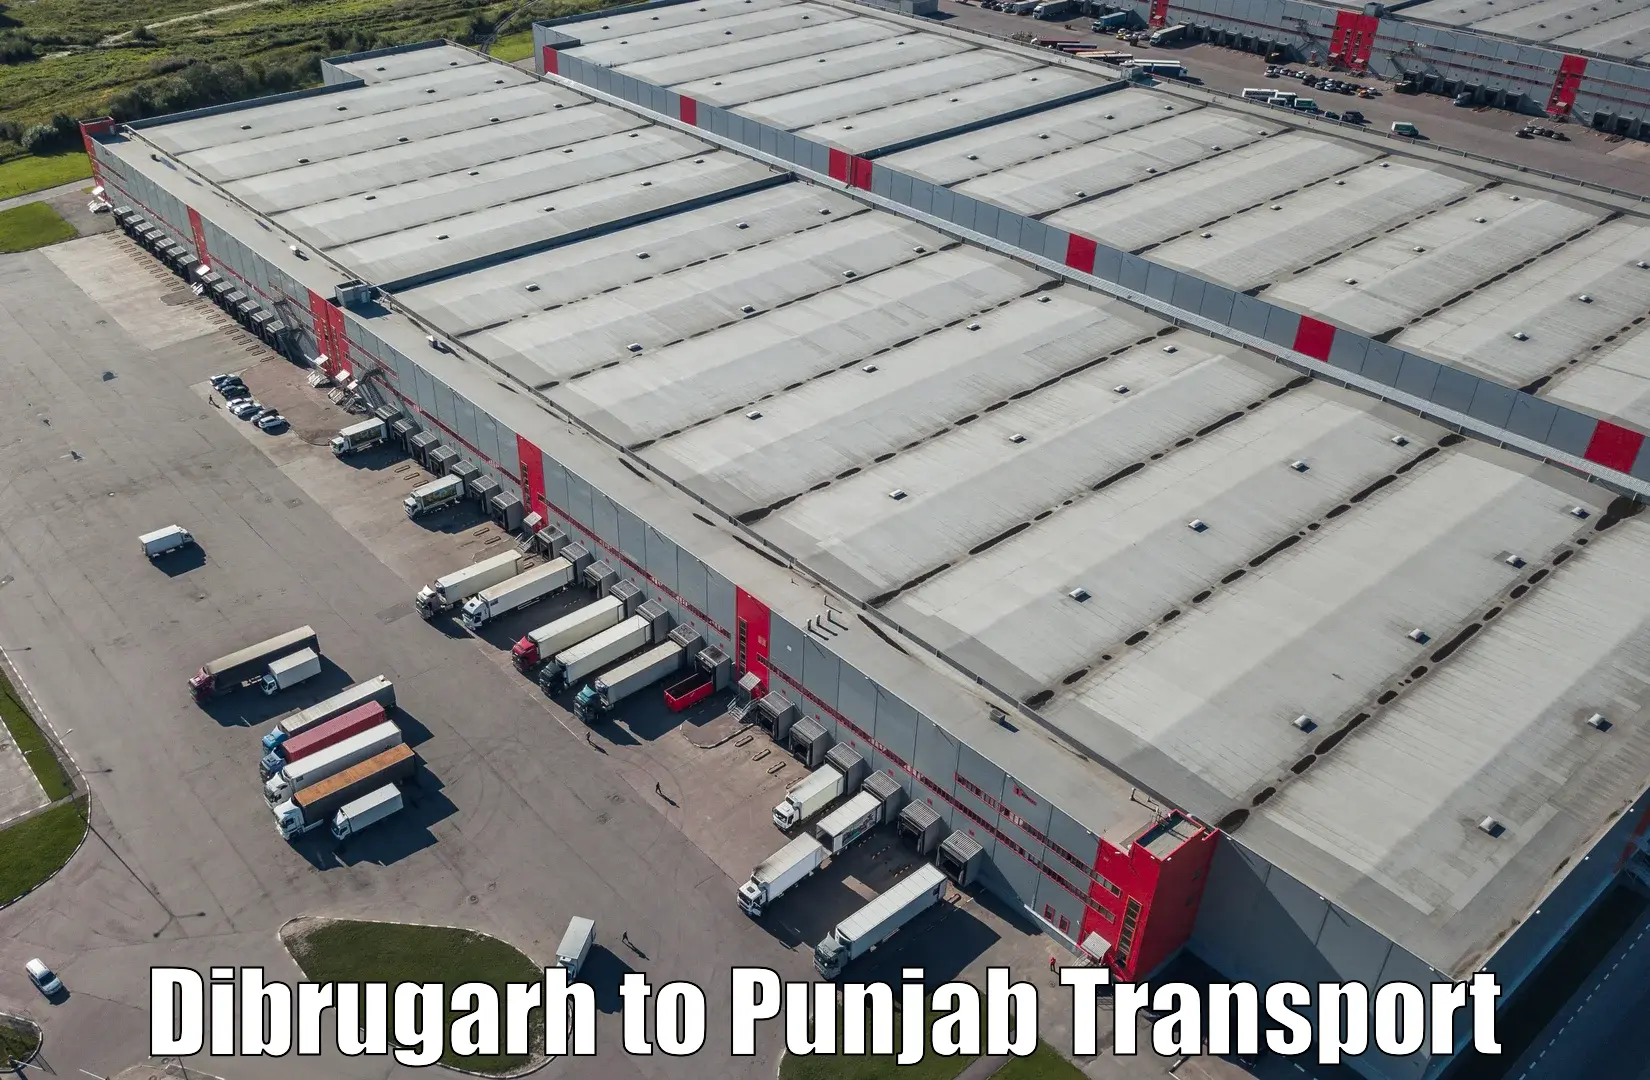 Land transport services in Dibrugarh to Garhshankar